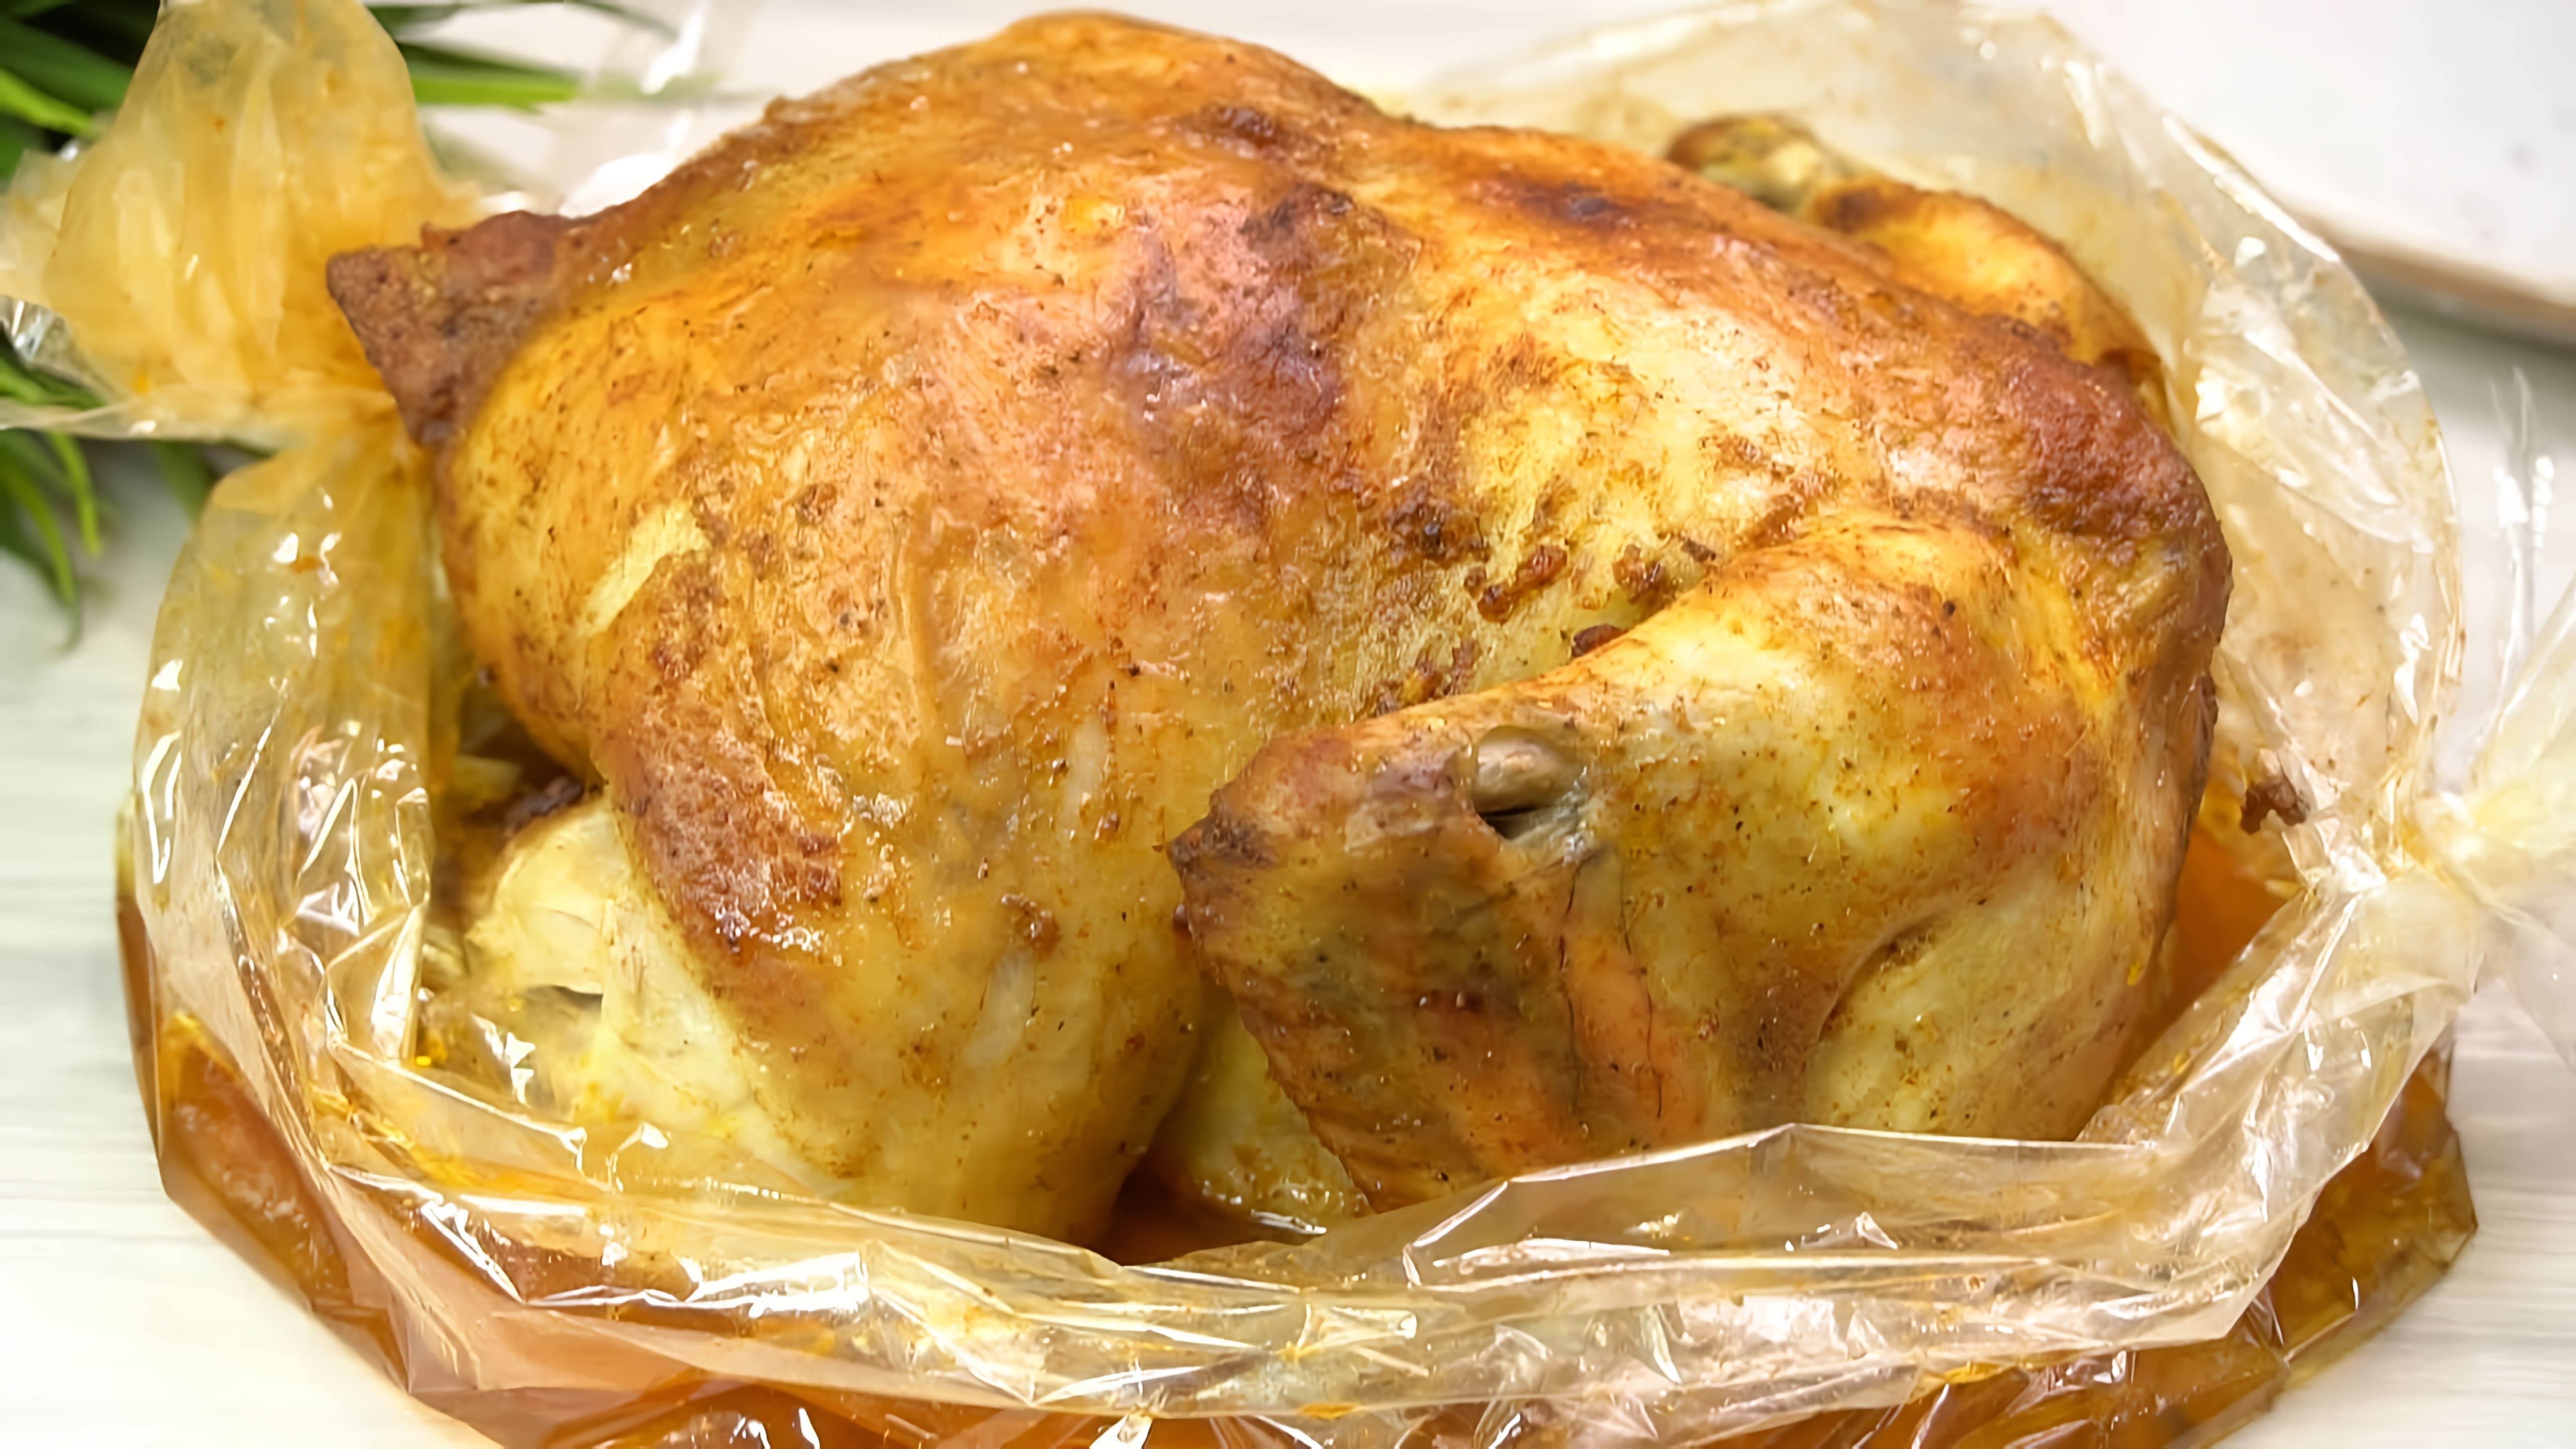 В данном видео демонстрируется рецепт приготовления курицы в микроволновой печи